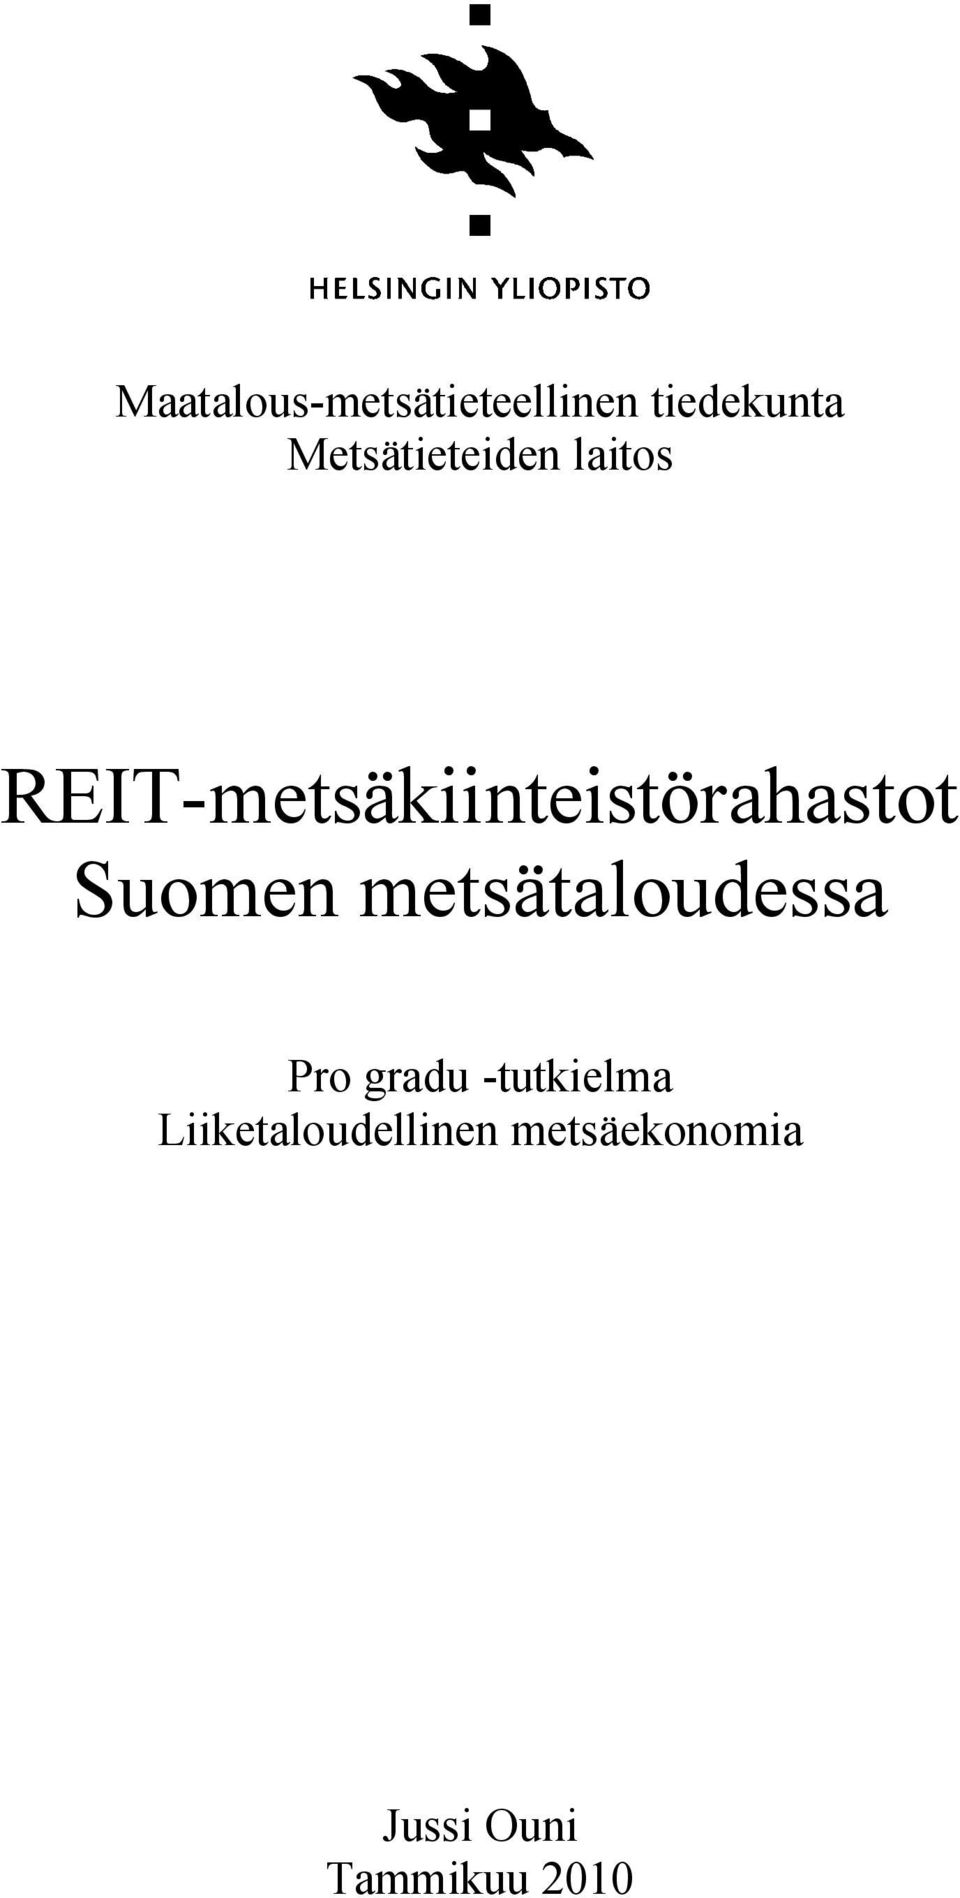 REIT-metsäkiinteistörahastot Suomen